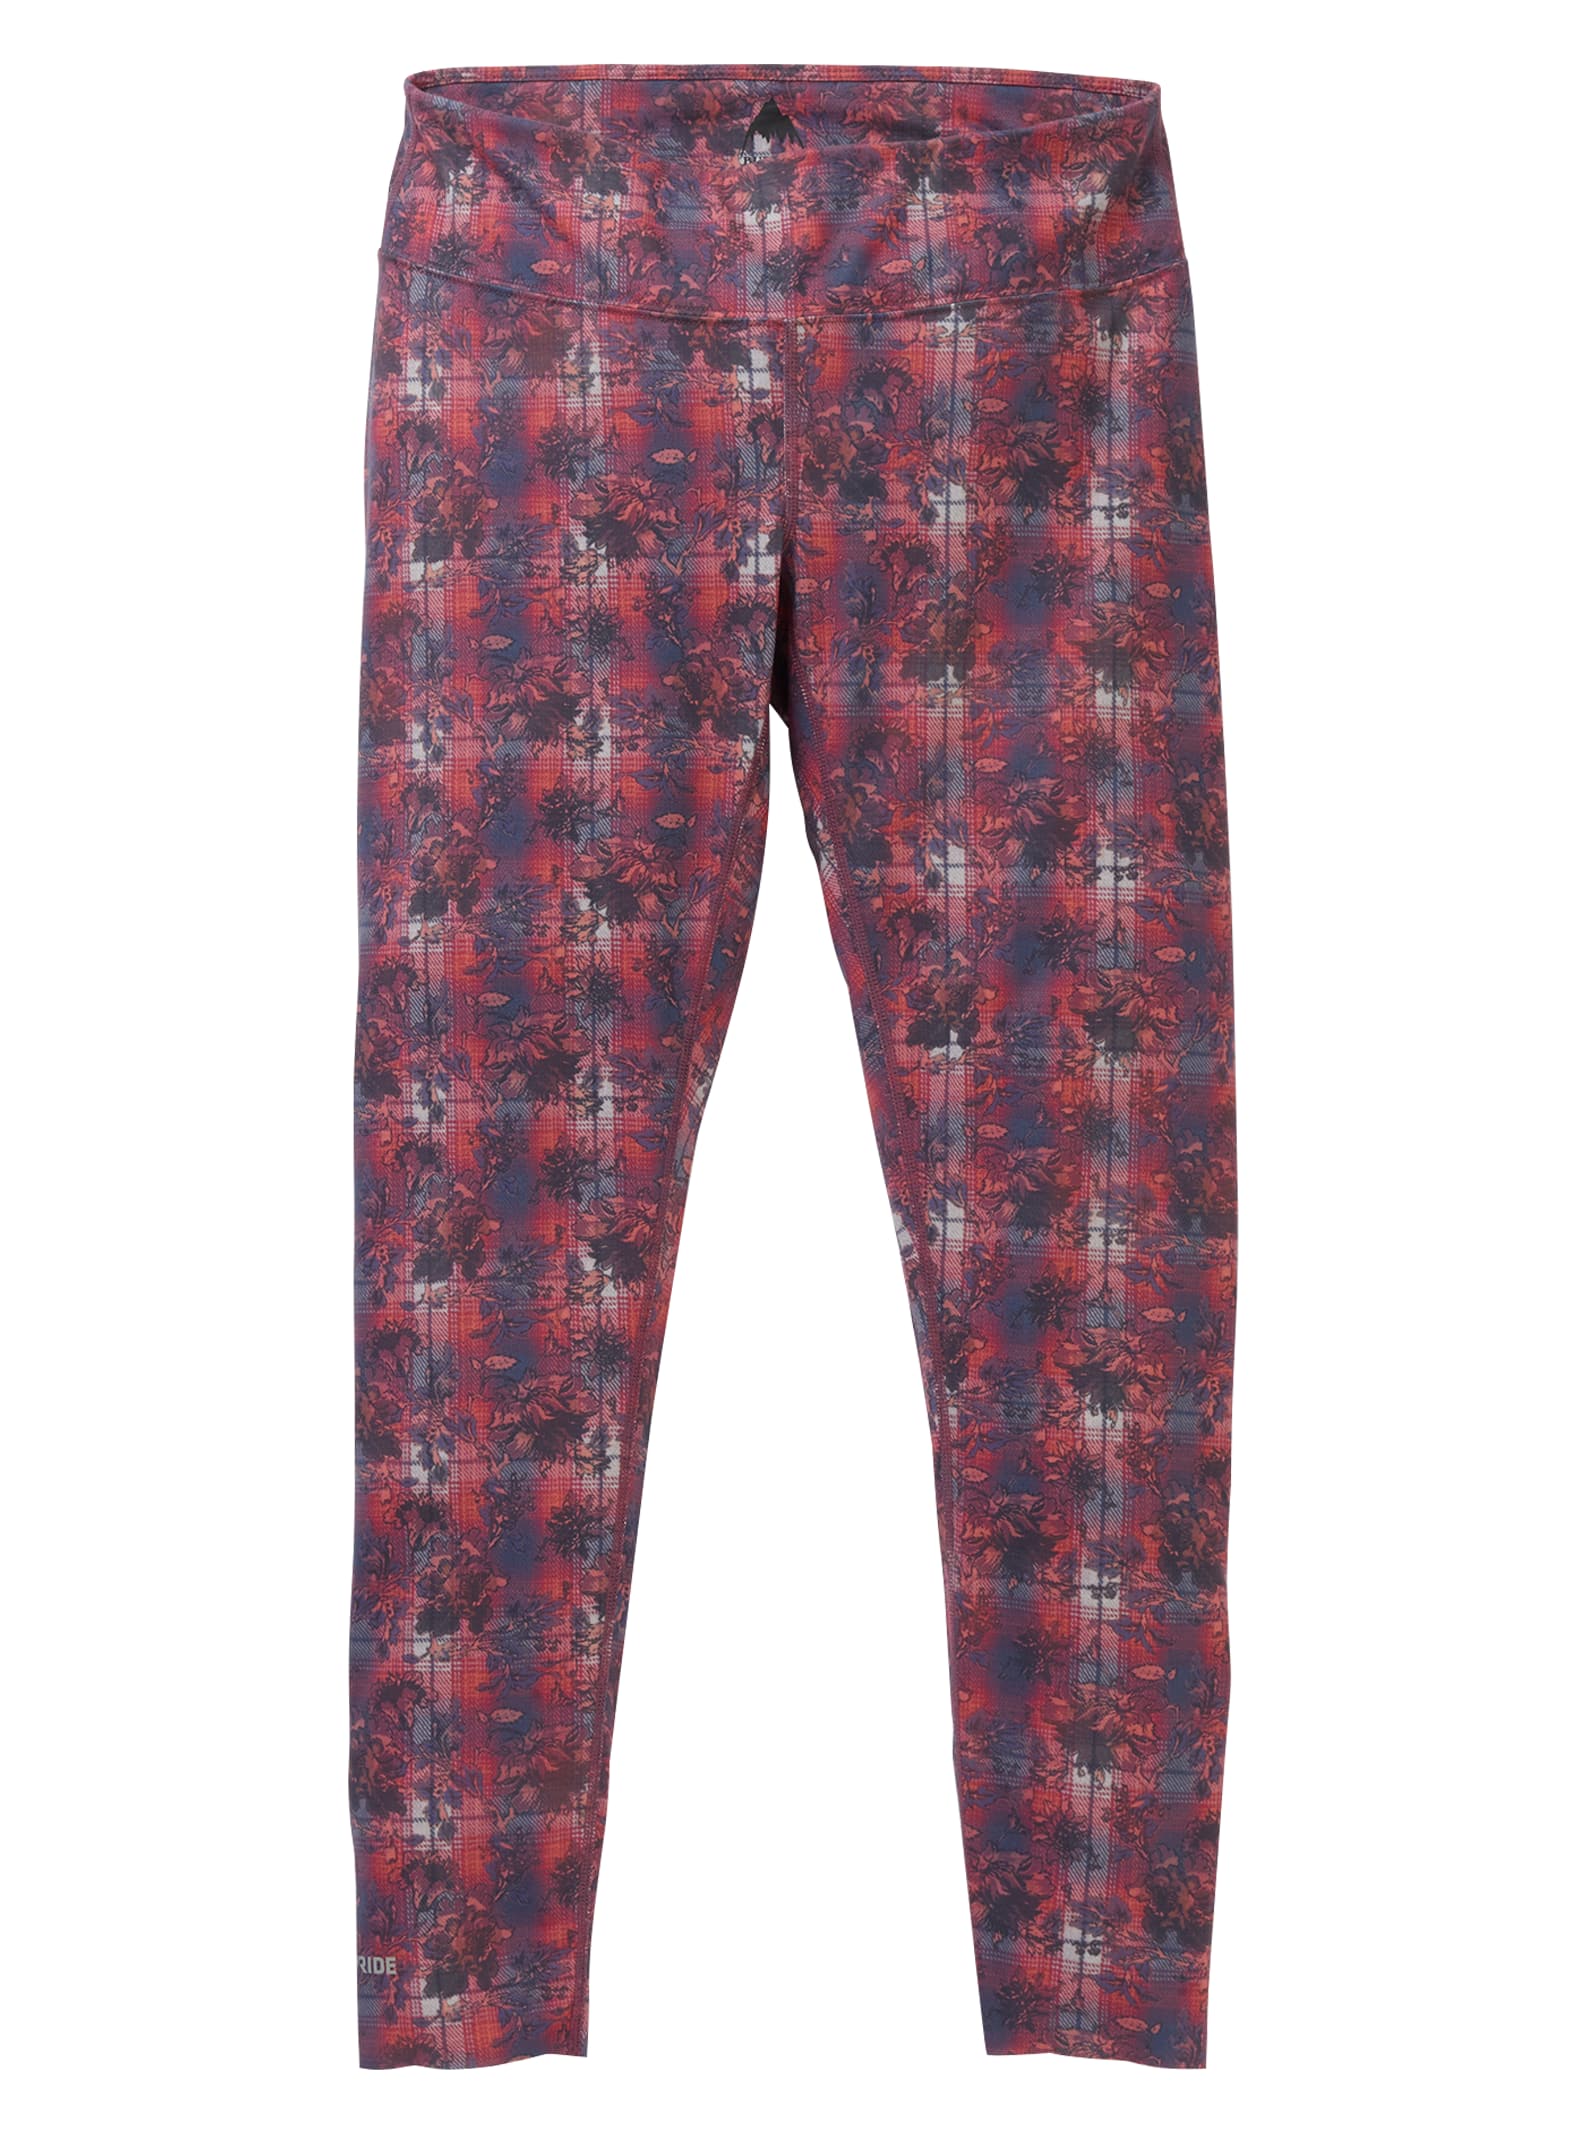 Burton - Pantalon de sous-vêtement intermédiaire femme, Nevermind Floral, XL